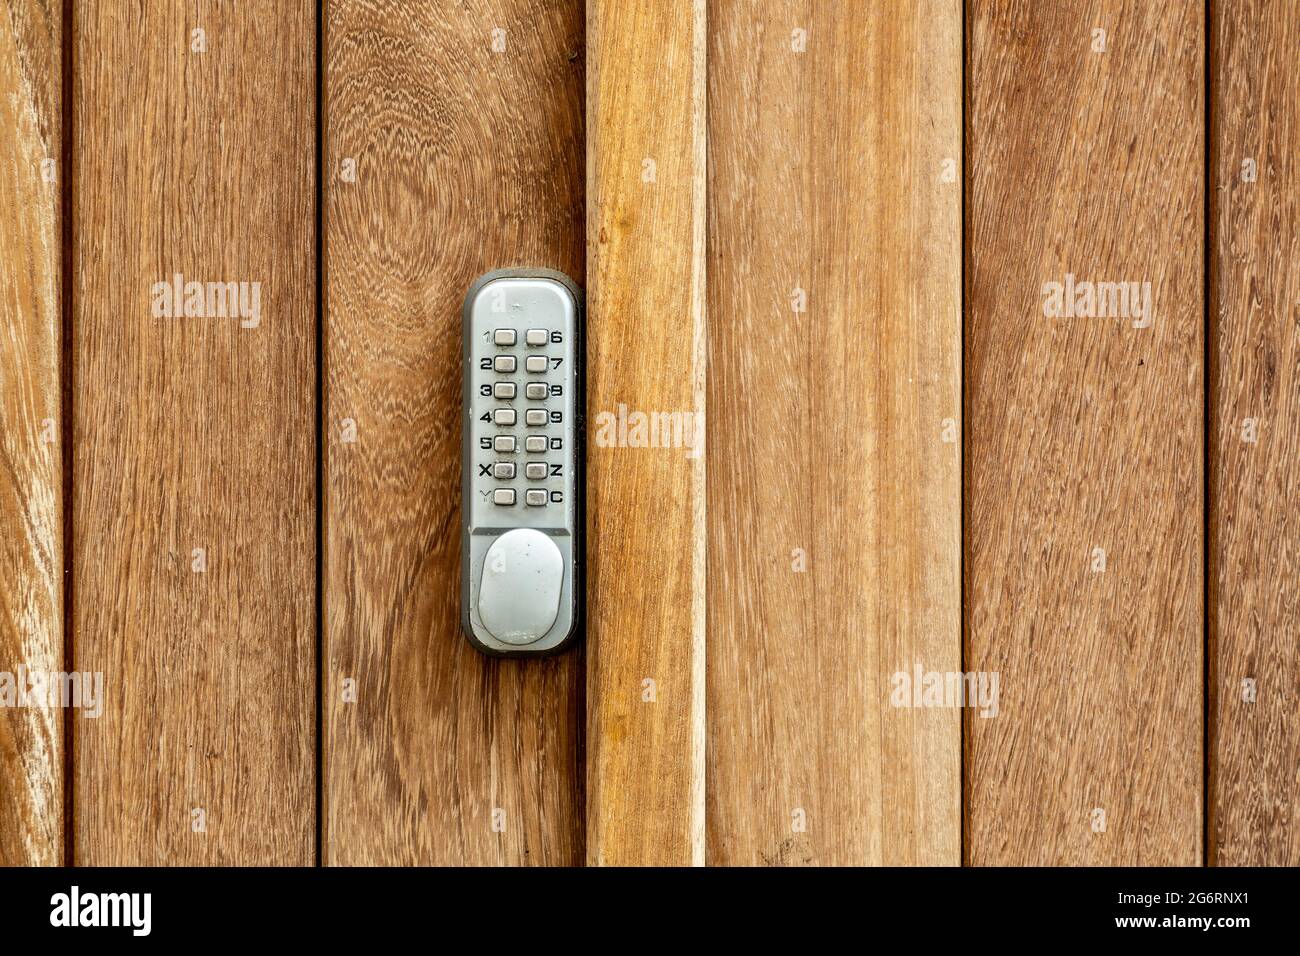 Un verrou à code à bouton-poussoir sur une porte en bois Banque D'Images